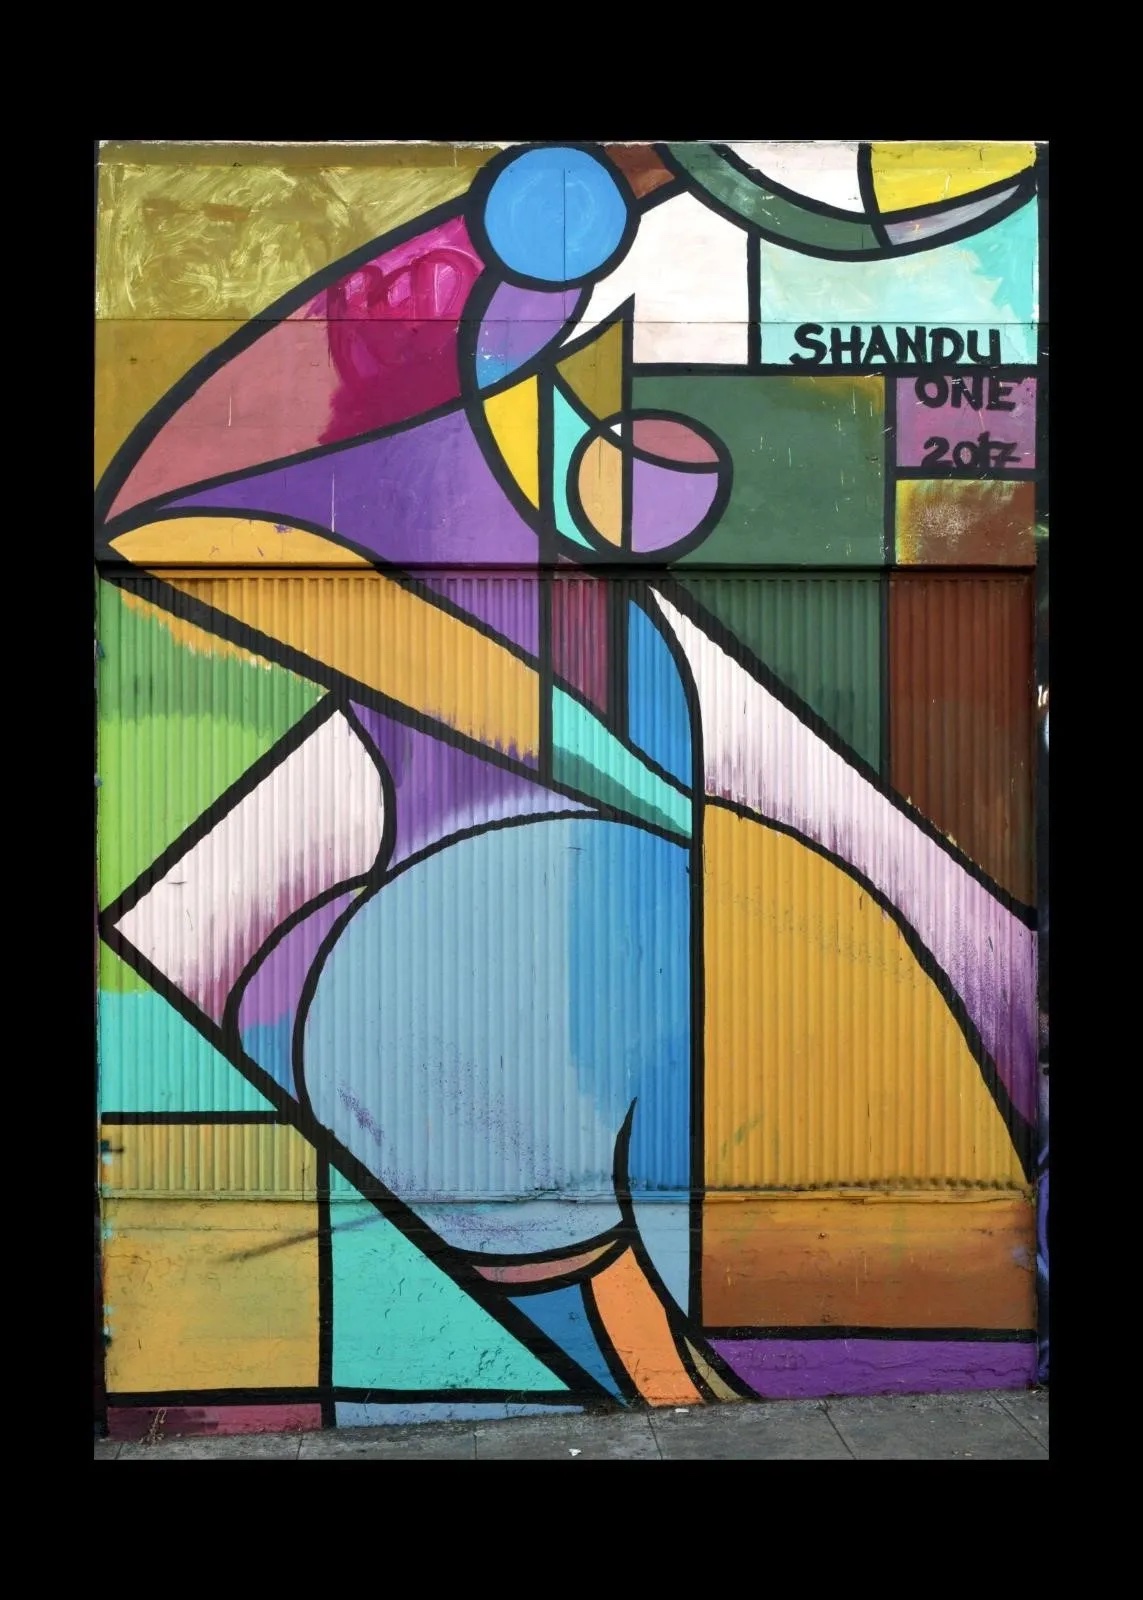 Shandu One mural